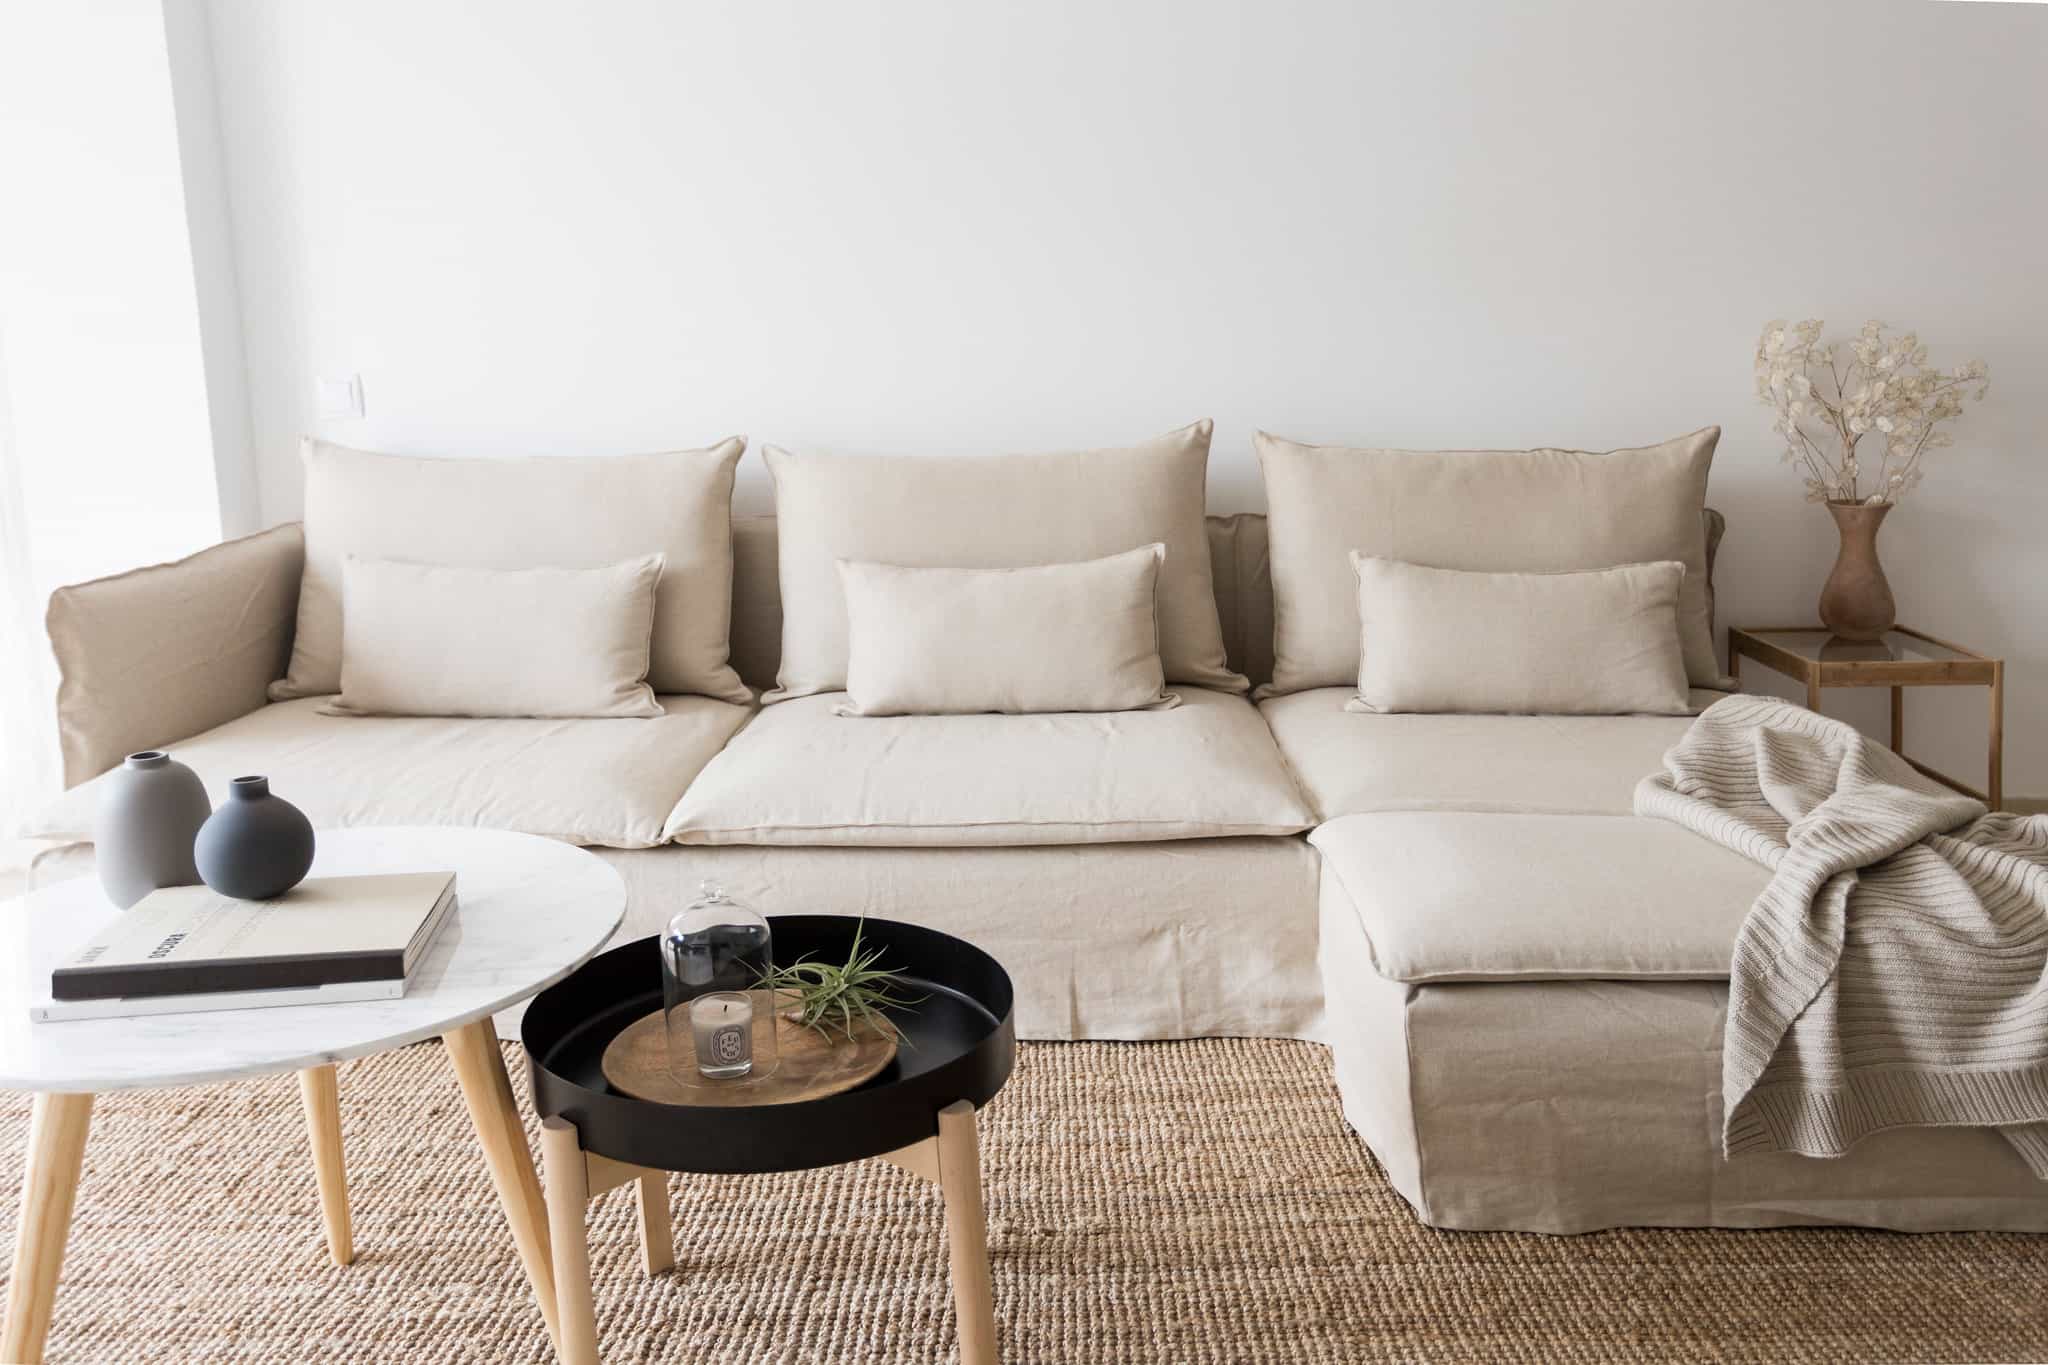 Beschrijving Vooroordeel hebzuchtig 5 best IKEA sofas under $1000 | Comfort Works Blog & Sofa Resources